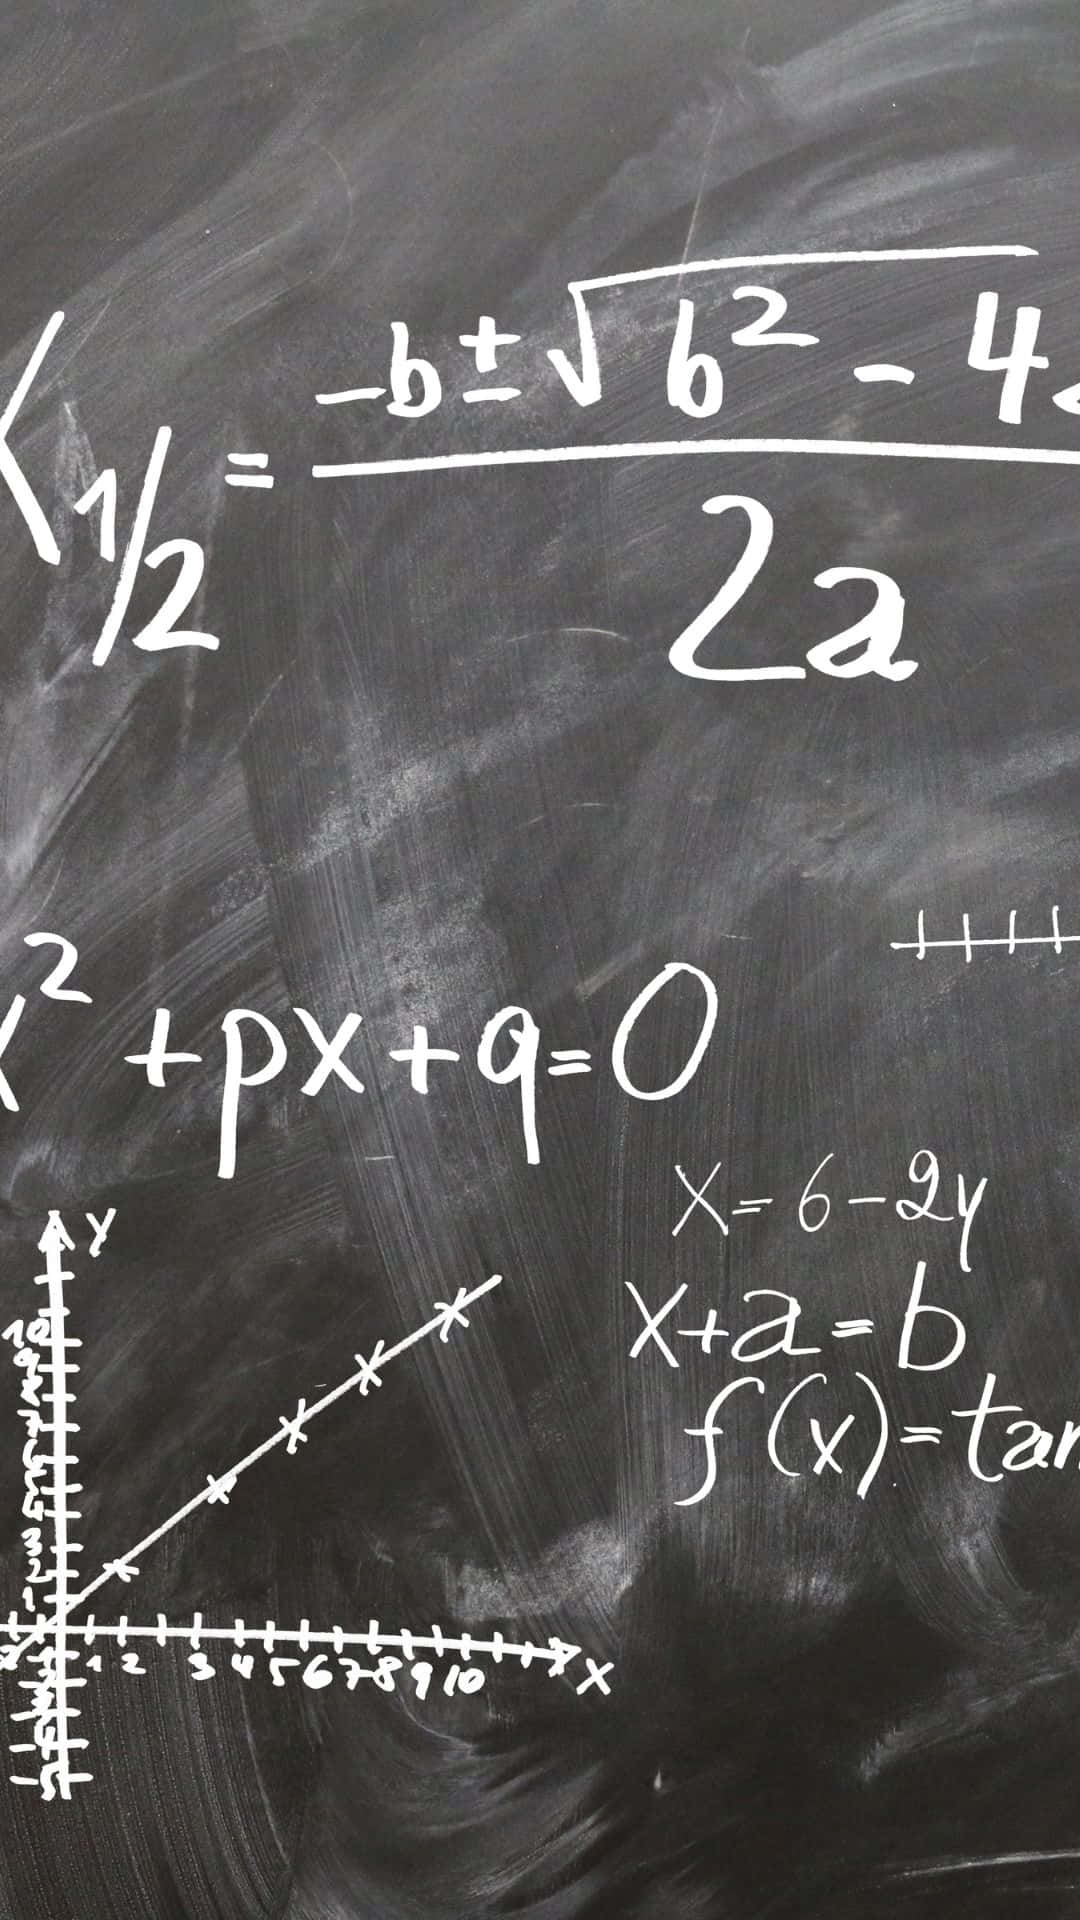 Physics Equations Blackboard